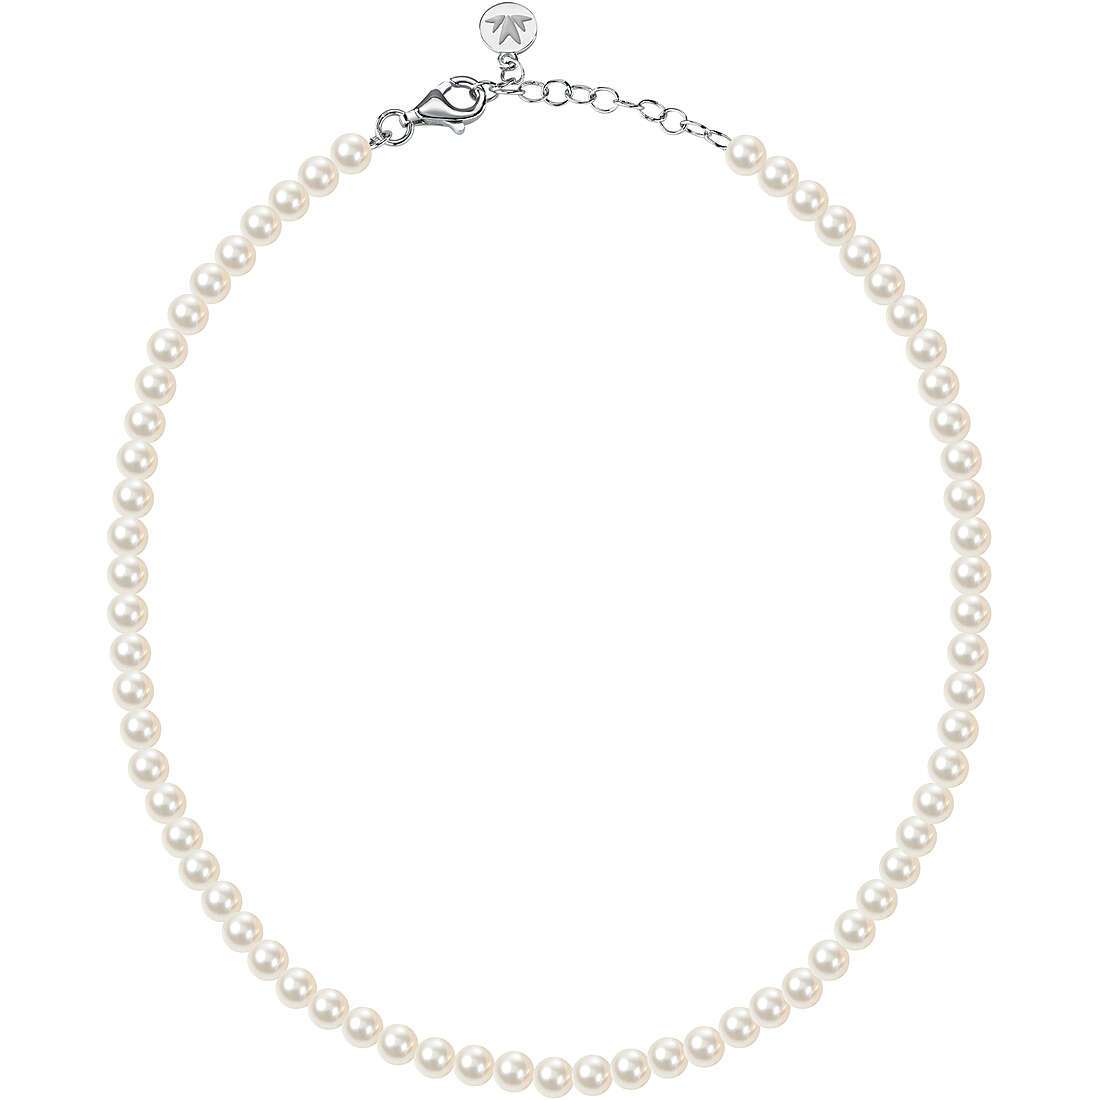 Halskette mit Perlen Morellato Perla Essenziale für frau SANH01